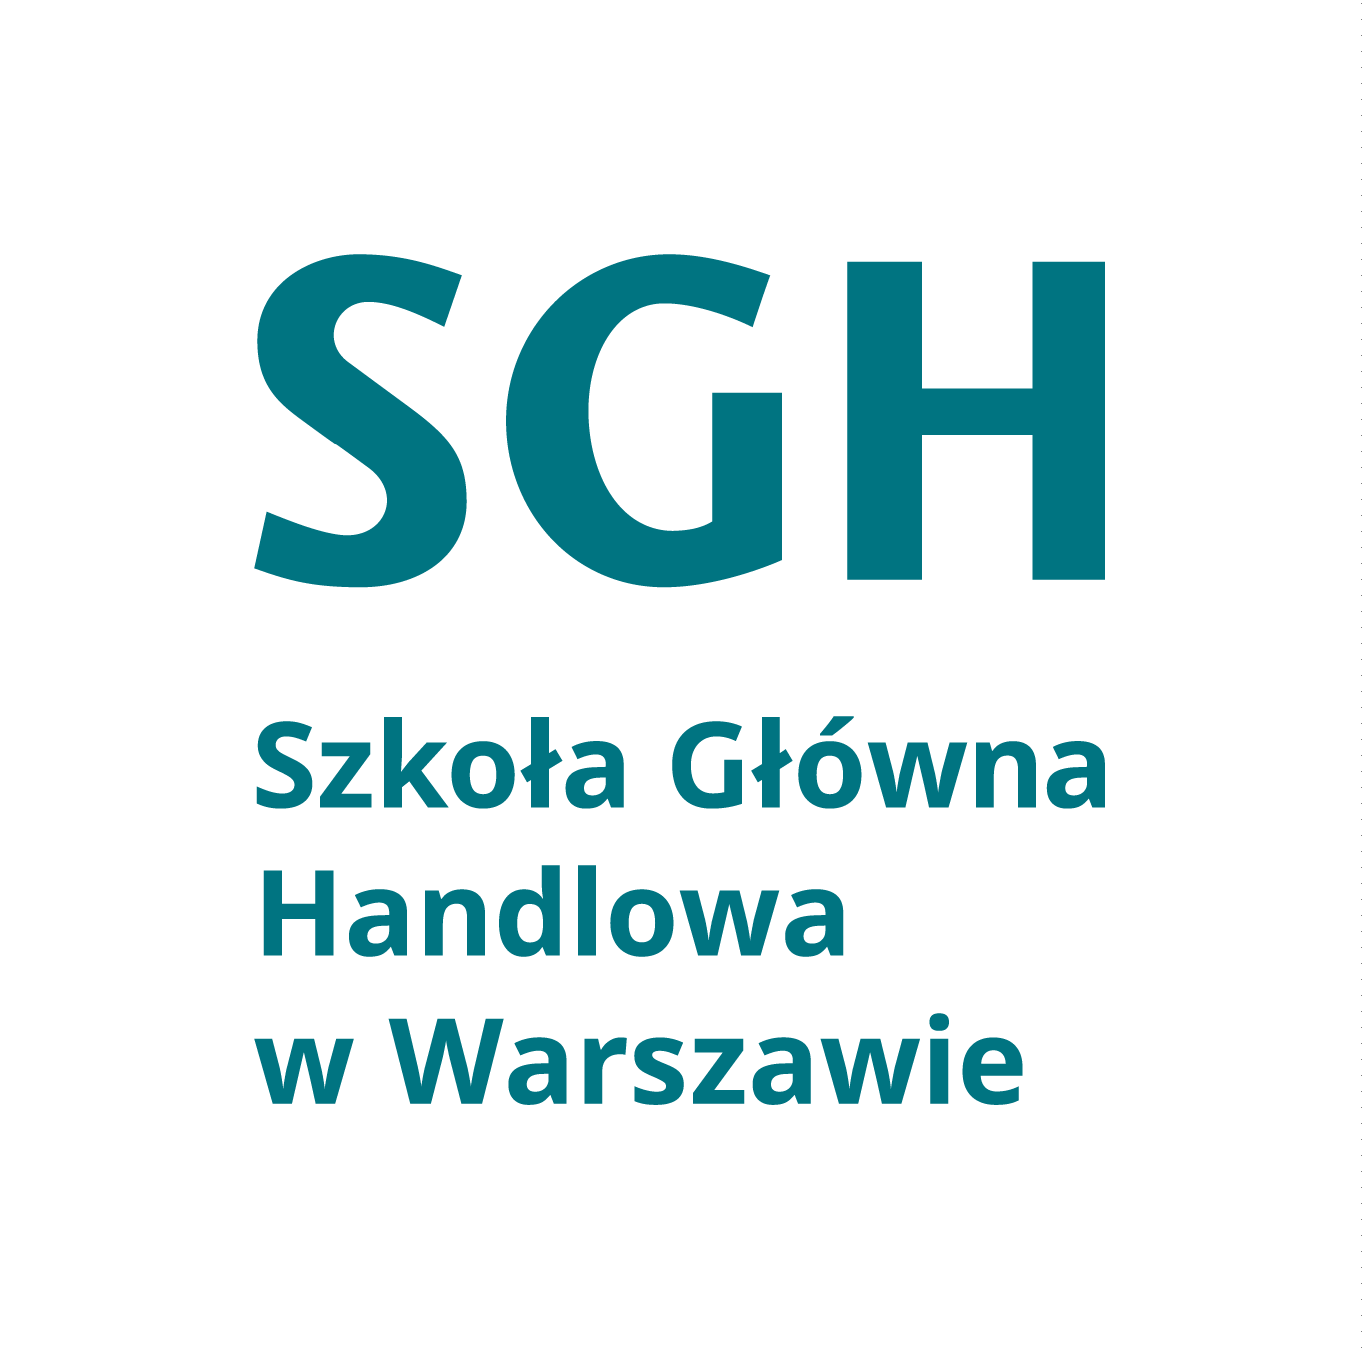 SGH Logo - Visual identity of